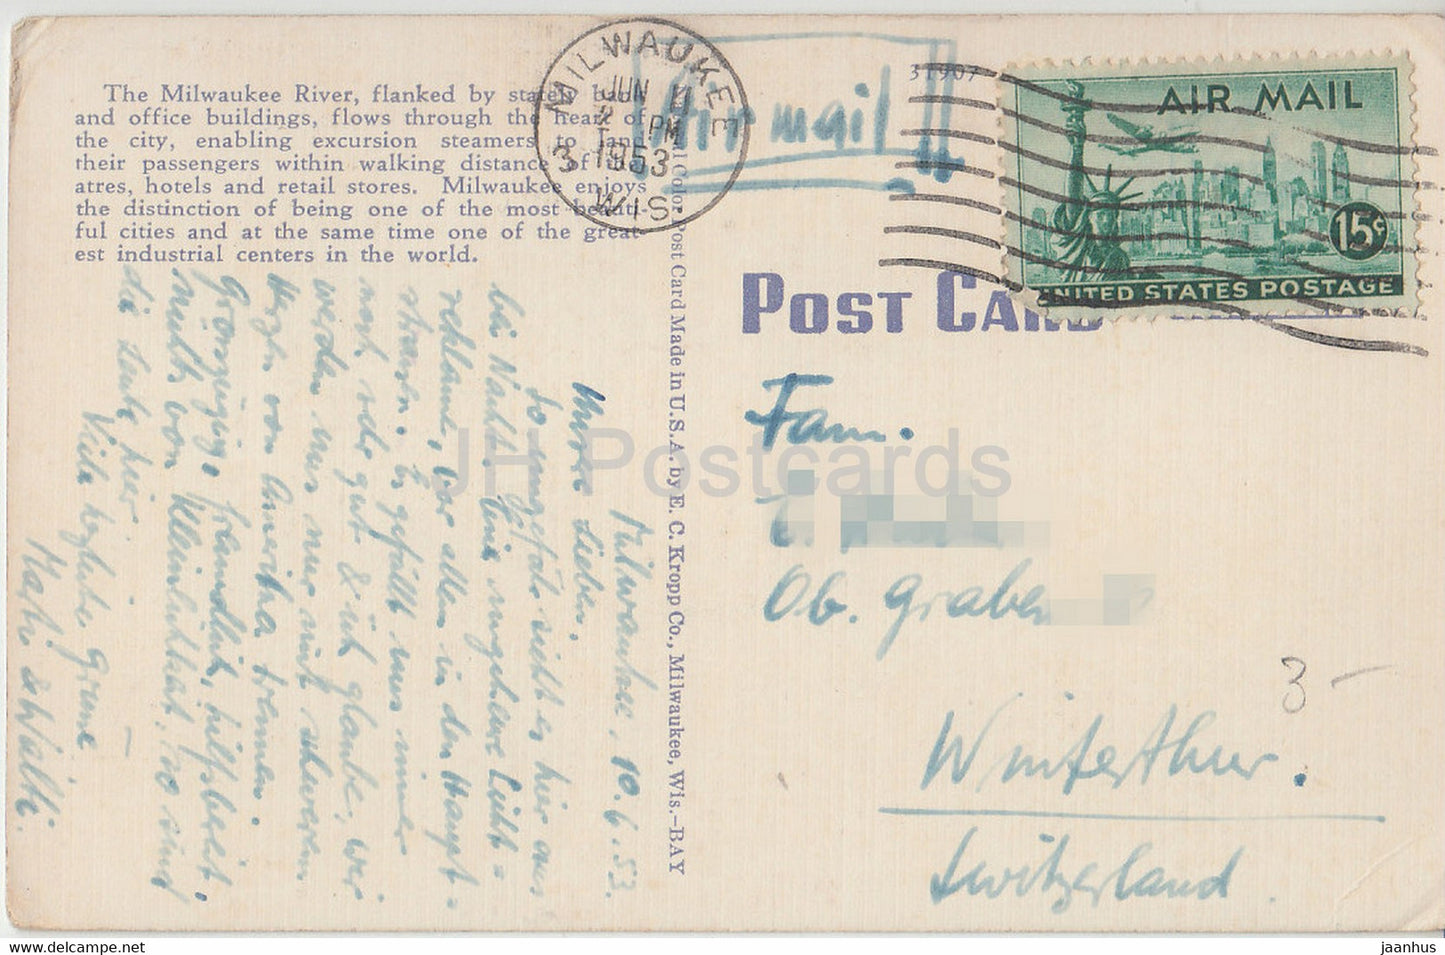 Milwaukee - River Front - Au sud du pont Wells St - carte postale ancienne - 1953 - États-Unis - utilisé